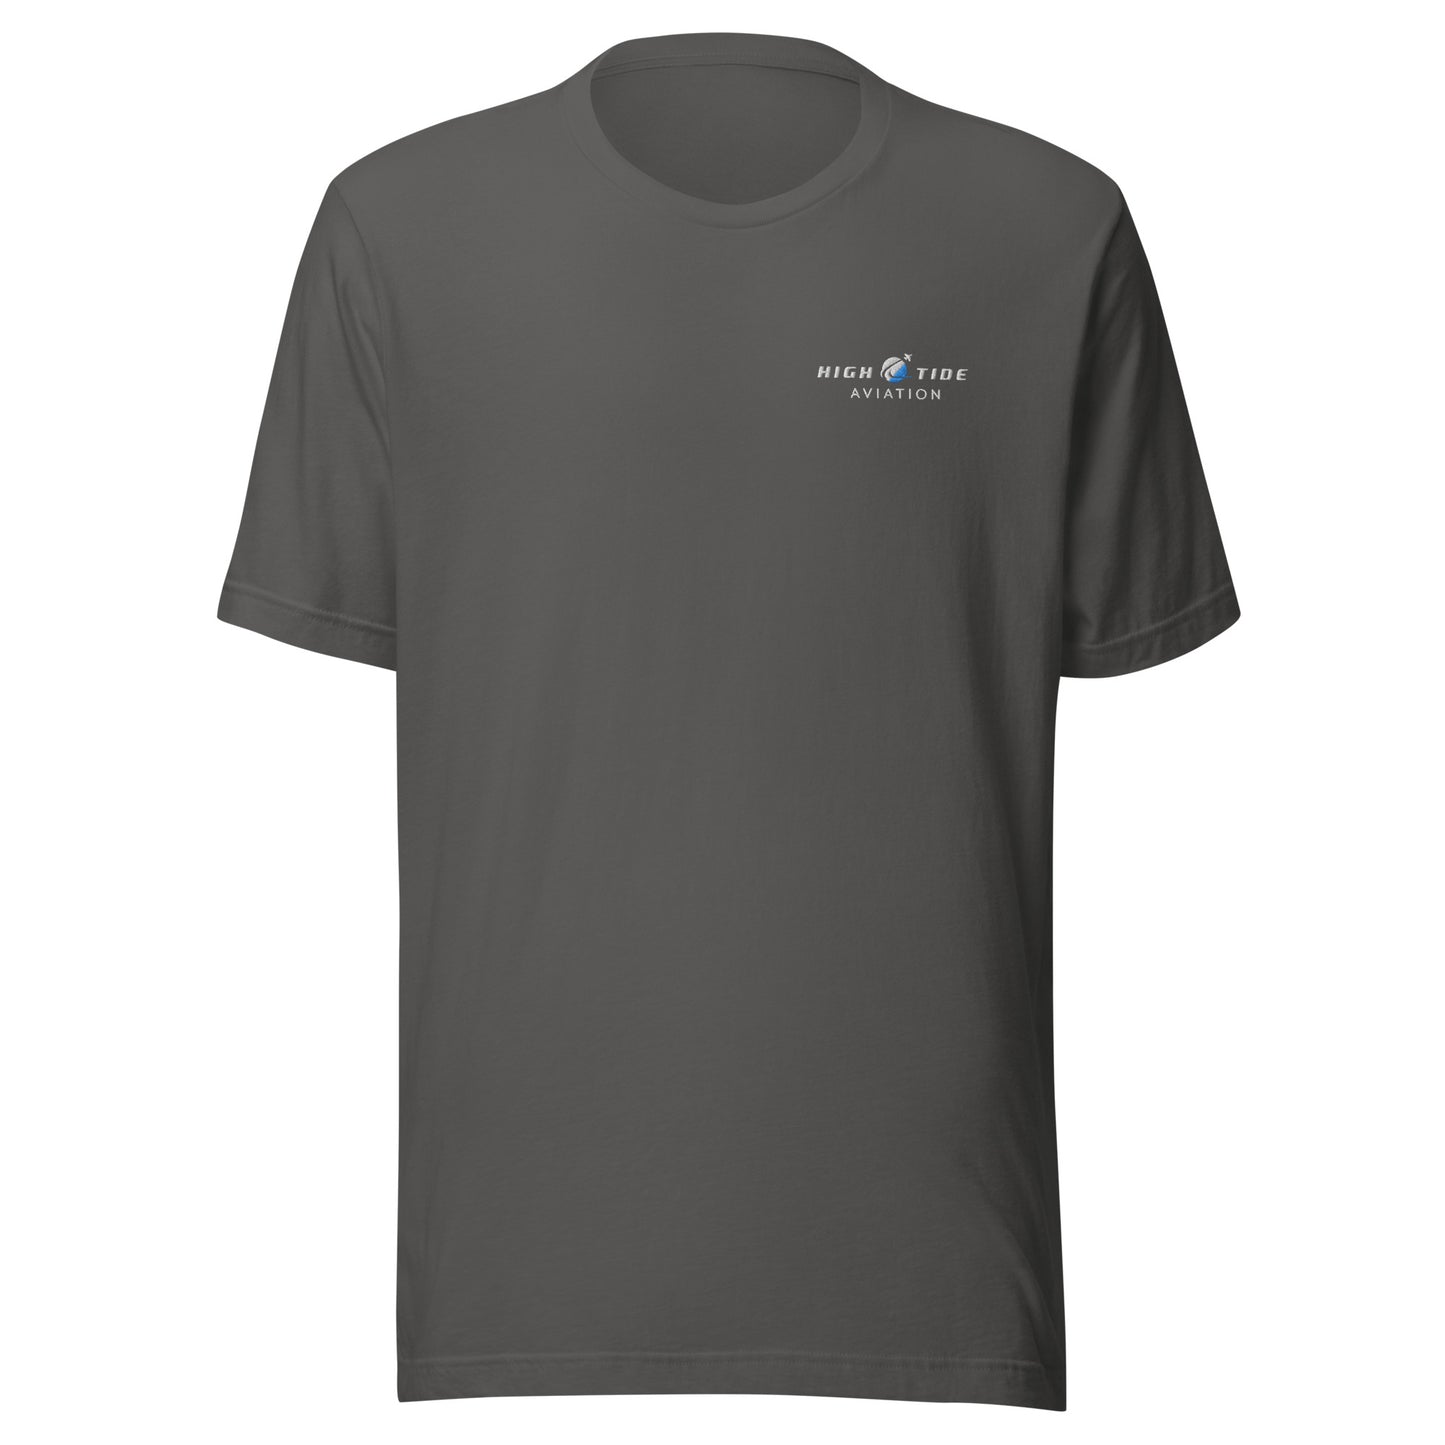 High Tide Aviation T-Shirt